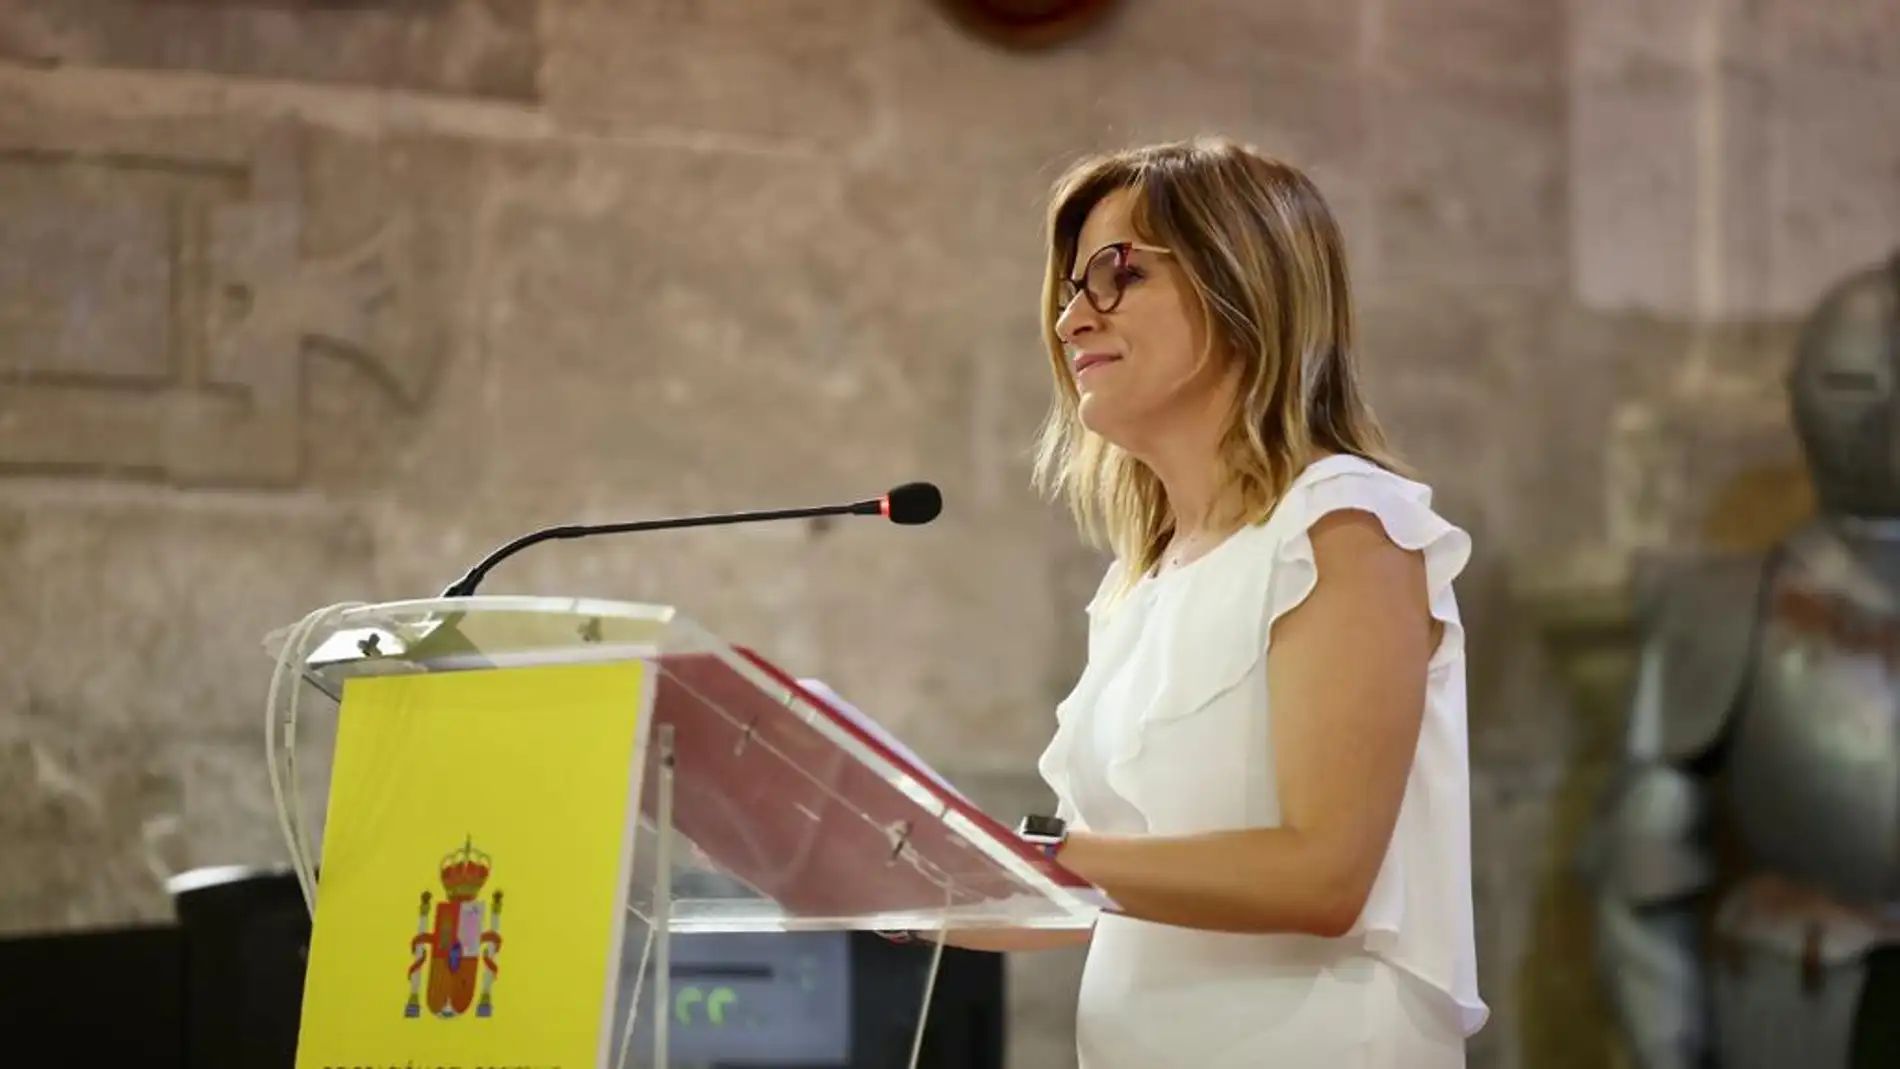  La delegada del Gobierno en la Comunidad Valenciana, Pilar Bernabé. ARCHIVO.